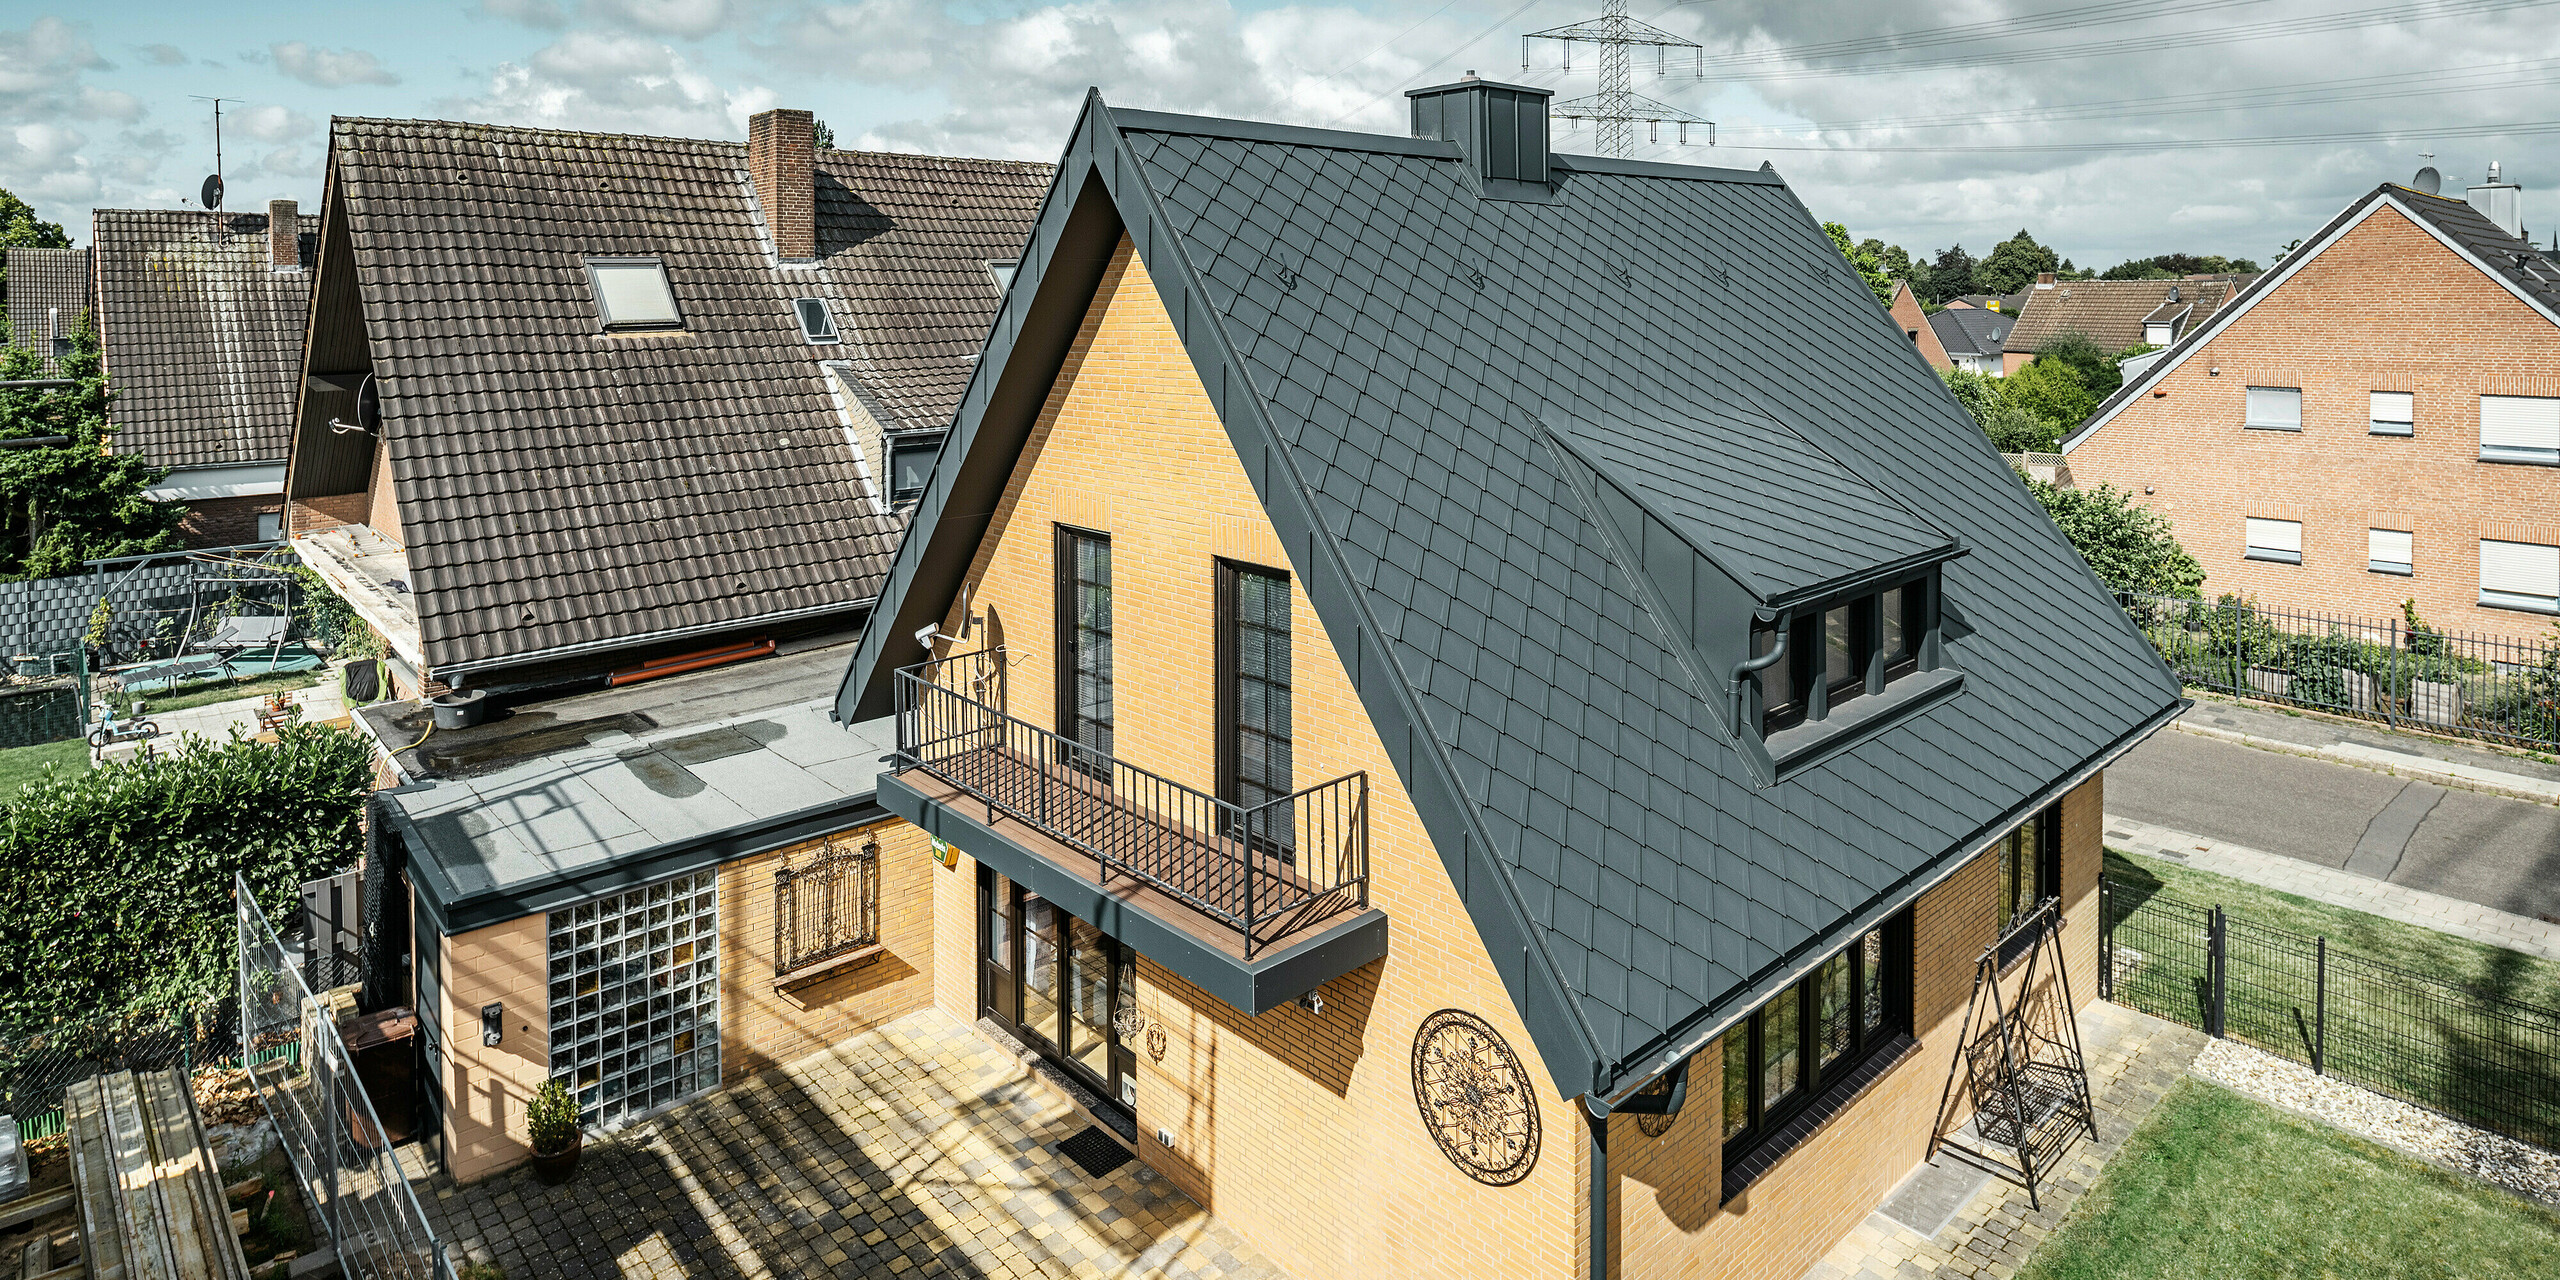 Enodružinska hiša v Tönisvorstu s koničasto dvokapno streho, prekrita s PREFA strešnimi rombi 29×29 v P.10 antracitni barvi. Streha ima jasne linije in strukturo. Žleb in odtočna cev sta barvno usklajena in se brezhibno prilegata dizajnu. Za hišo so značilne rumene opečne stene, ki so v kontrastu s temnimi strešnimi elementi, zunanjo podobo pa dopolnjujeta balkon in manjše gospodarsko poslopje.